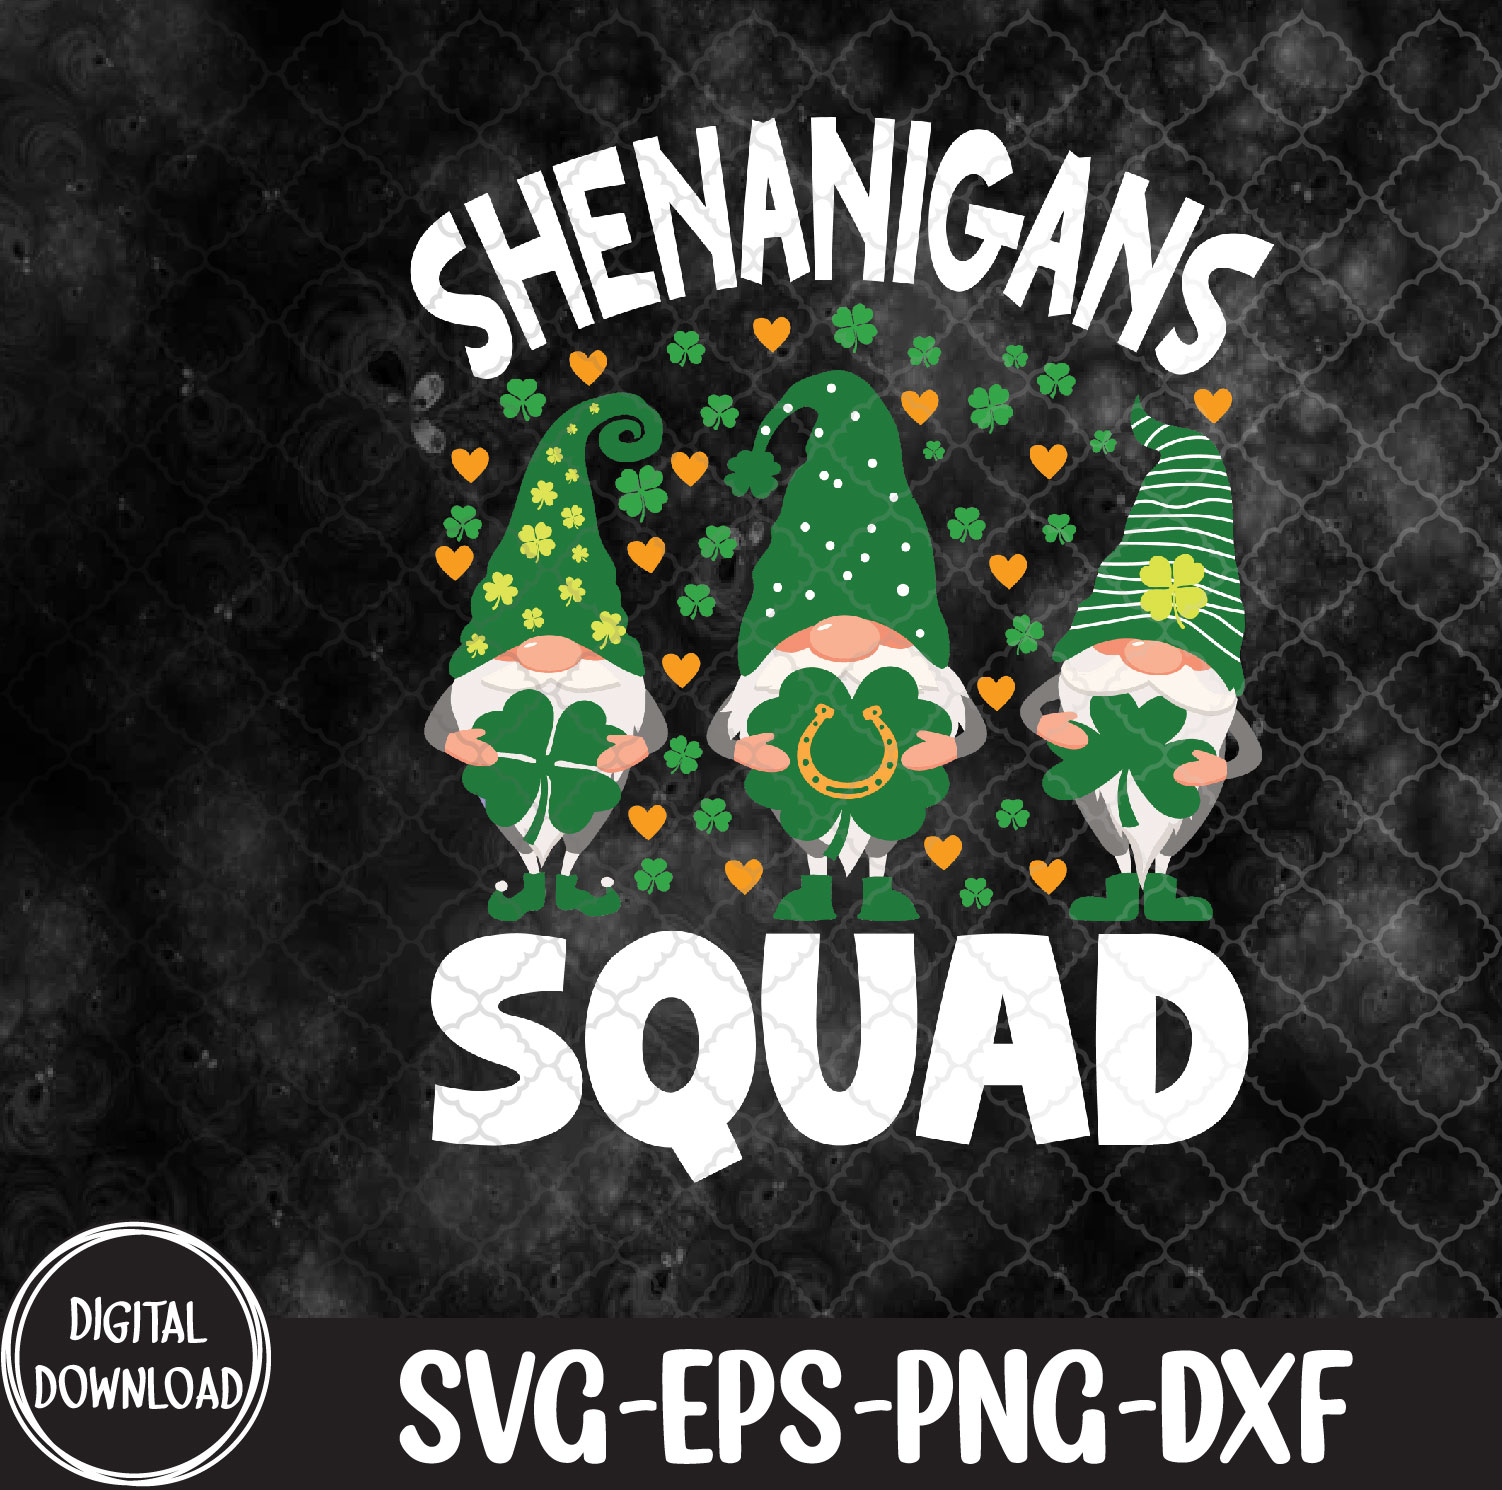 WTMNEW9file 09 92 Shenanigans Squad Funny St Patricks Day Irish Gnomes, St Patricks Day svg, Svg, Eps, Png, Dxf